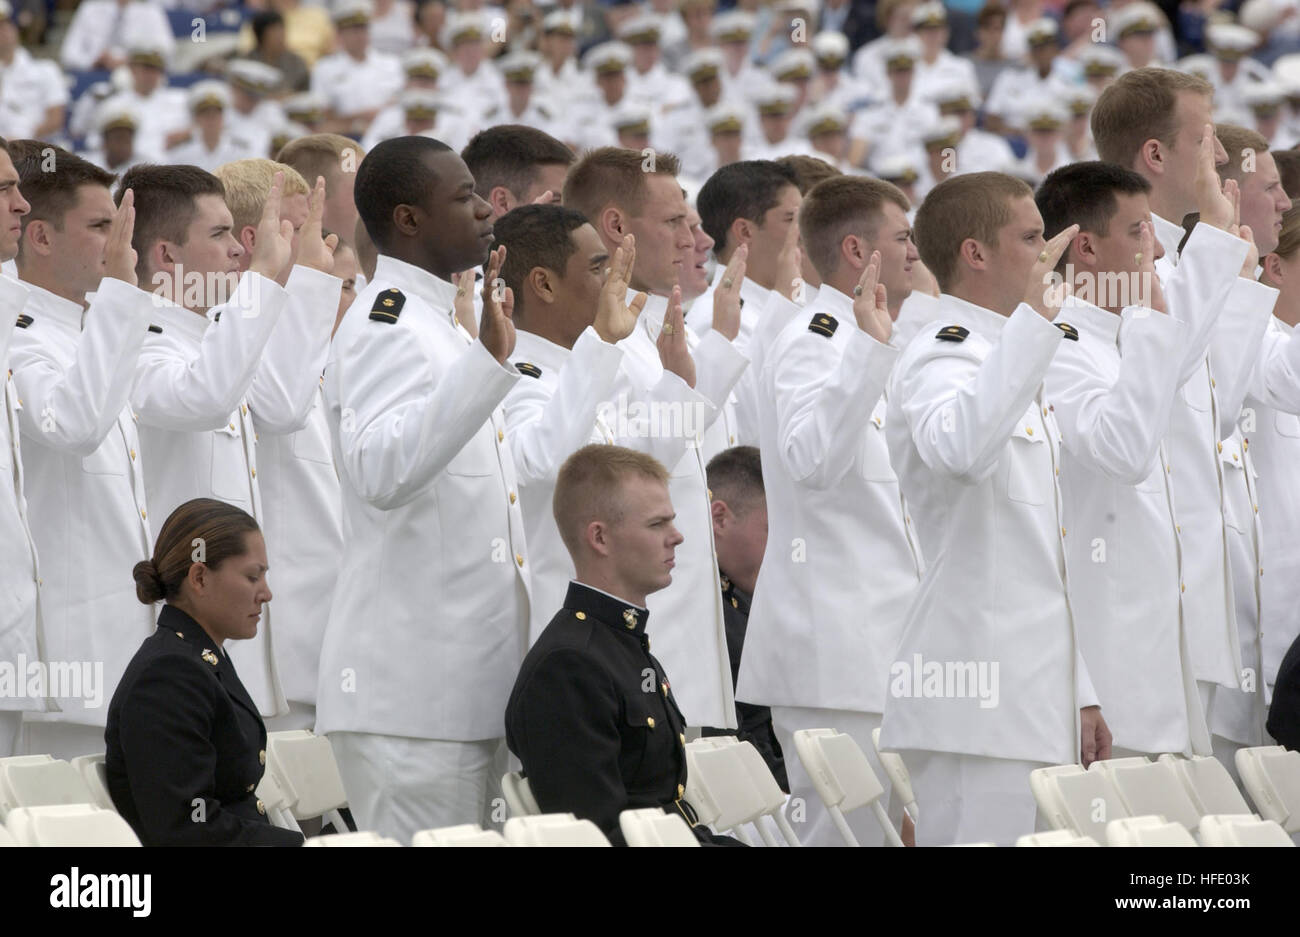 040528-N-9693M-013 United States Naval Academy (28. Mai 2004) - stehen Midshipmen während der Verabreichung von Eid des Amtes für Absolventen Eintritt in Dienst als ein Marine-Fähnrich bei der United States Naval Academy-Klasse 2004 Graduierung und Inbetriebnahme Zeremonie. Neunhundert neunzig Midshipmen studierte an der United States Naval Academy und wurde in das US-Militär Offiziere. Gen Myers lieferte die Eröffnungsrede und persönlich begrüßt jeder Absolvent während der Zeremonie. Die Männer und Frauen der Abschlussklasse wurden in der Marine als Flaggen oder in der Marine Corps als zweite Leutnants vereidigt. Stockfoto